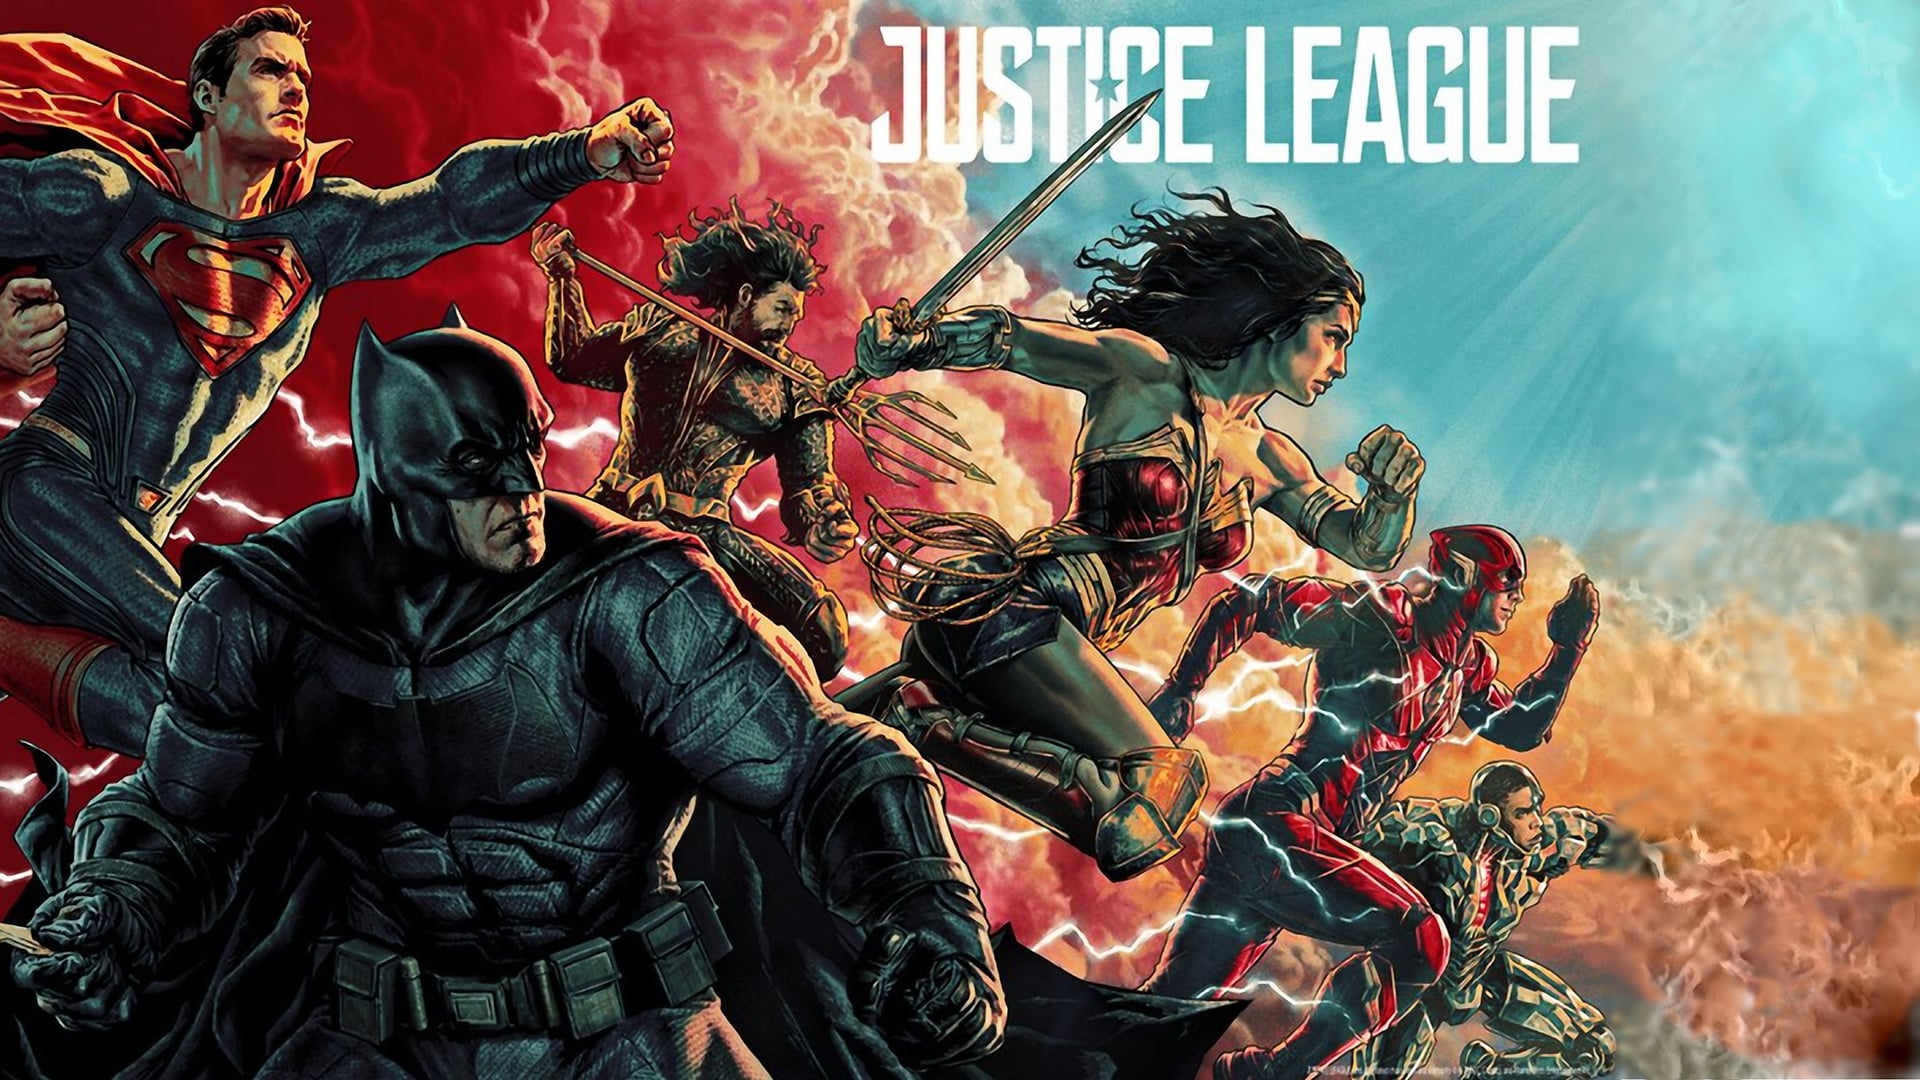 Justice League 2: per Zack Snyder, la Warner non vuole continuare la saga